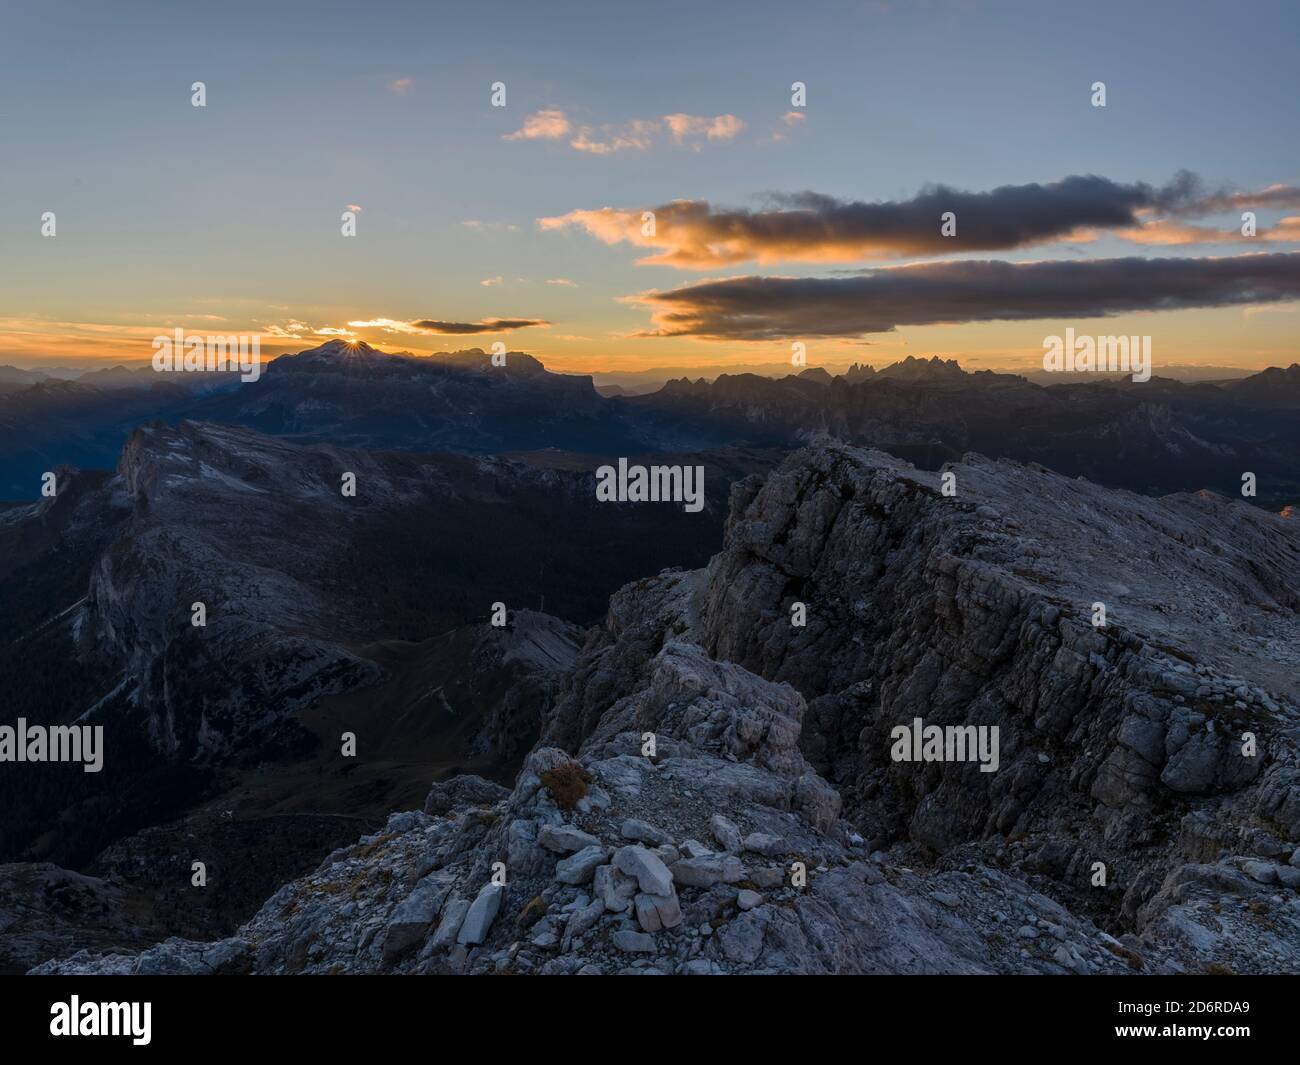 Coucher de soleil dans les dolomites, vue depuis le mont Lagazuoi. Les Dolomites sont classés au patrimoine mondial de l'UNESCO. europe, Europe centrale, italie Banque D'Images